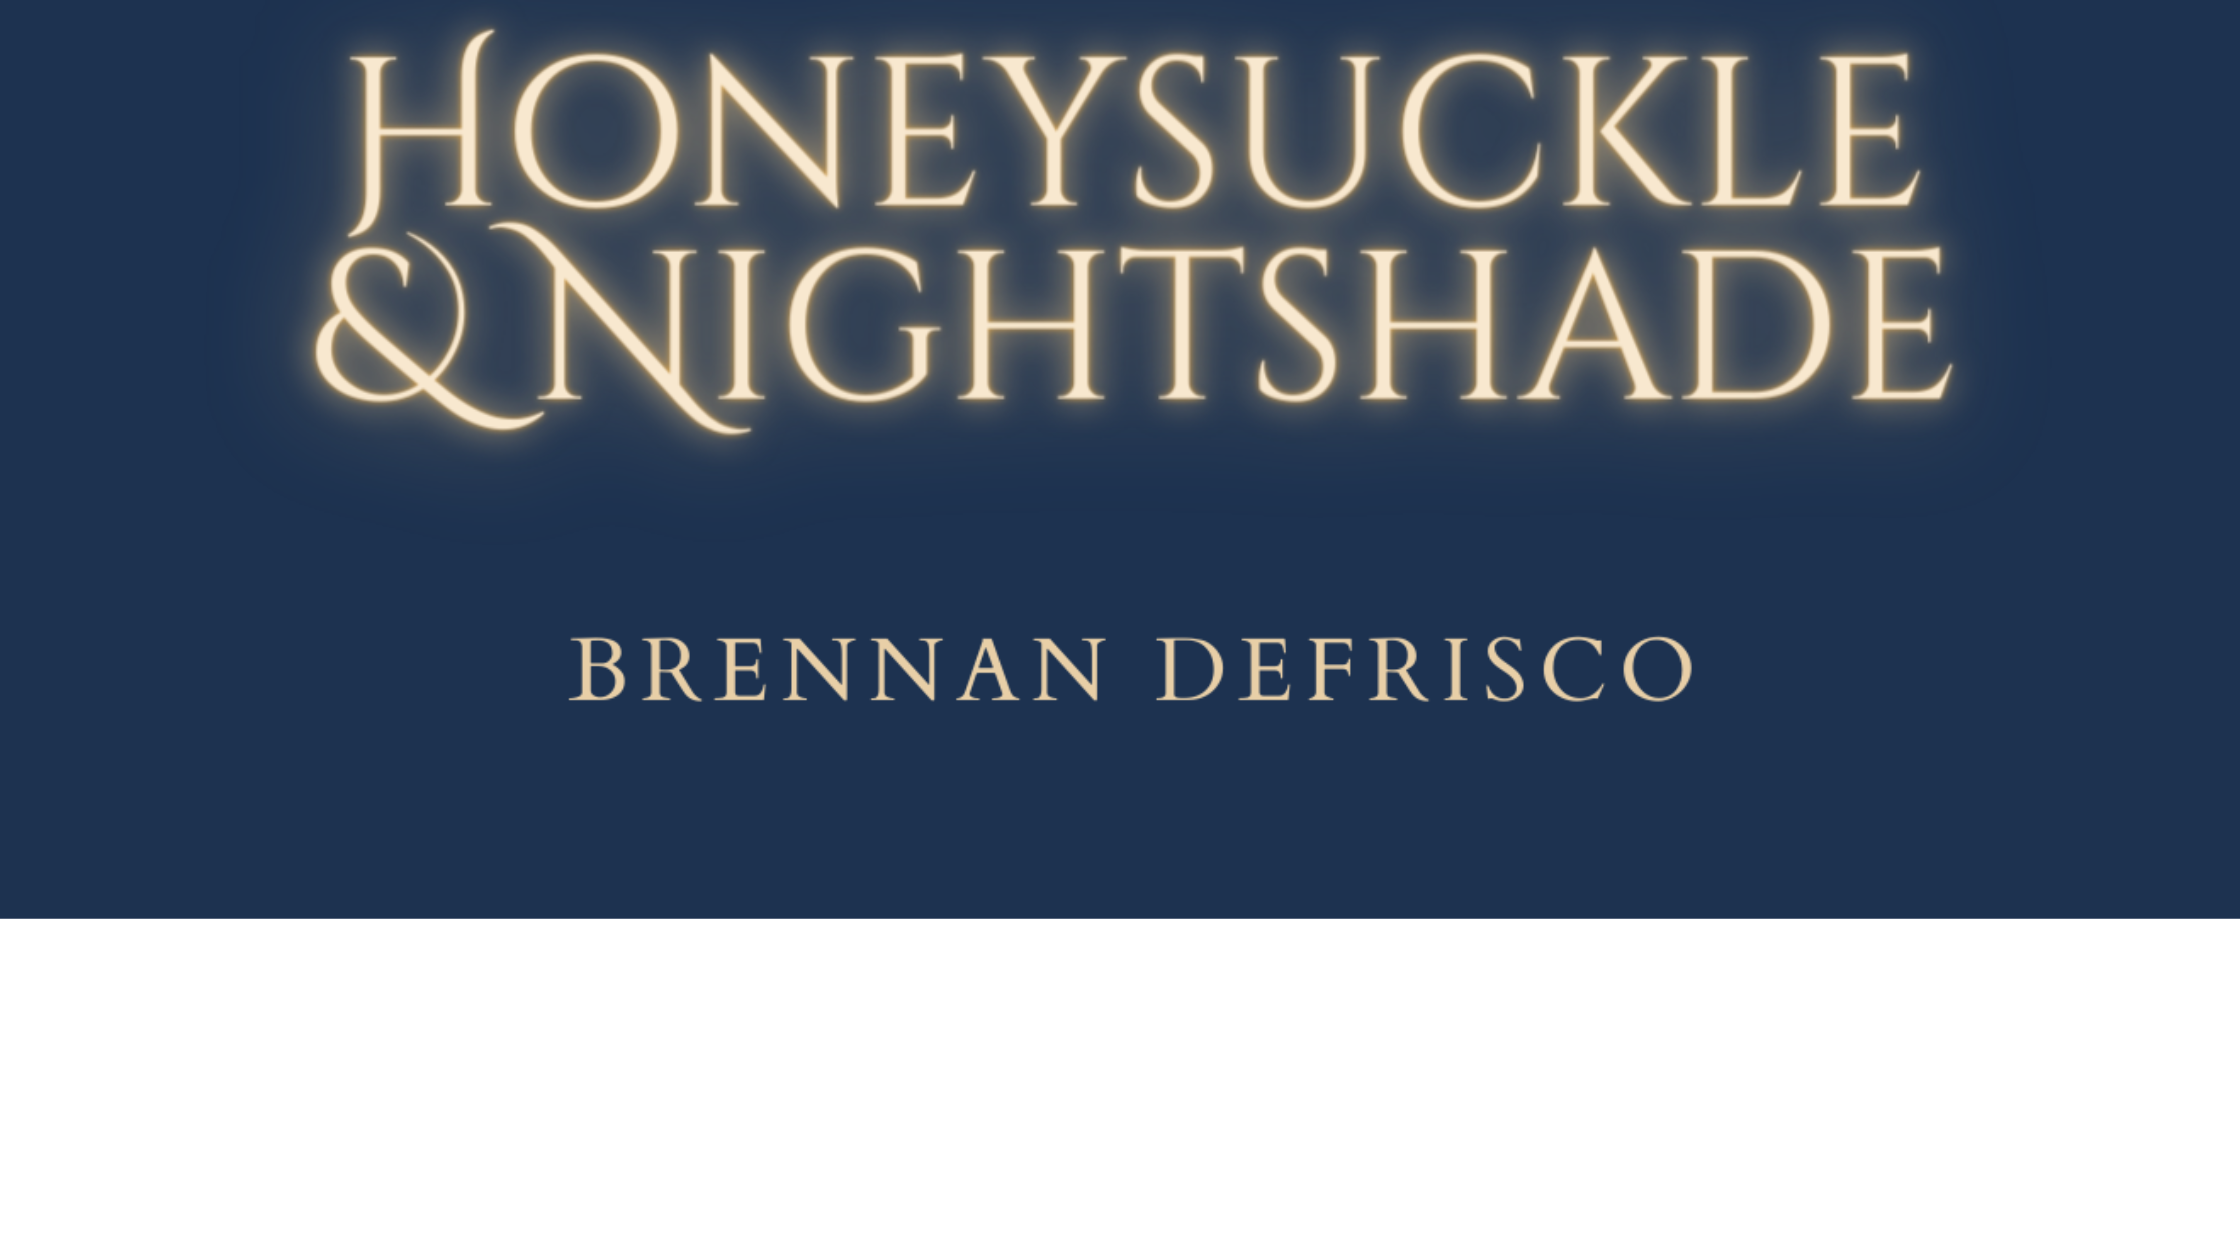 Honeysuckle & Nightshade Cover Art by Brennan DeFrisco